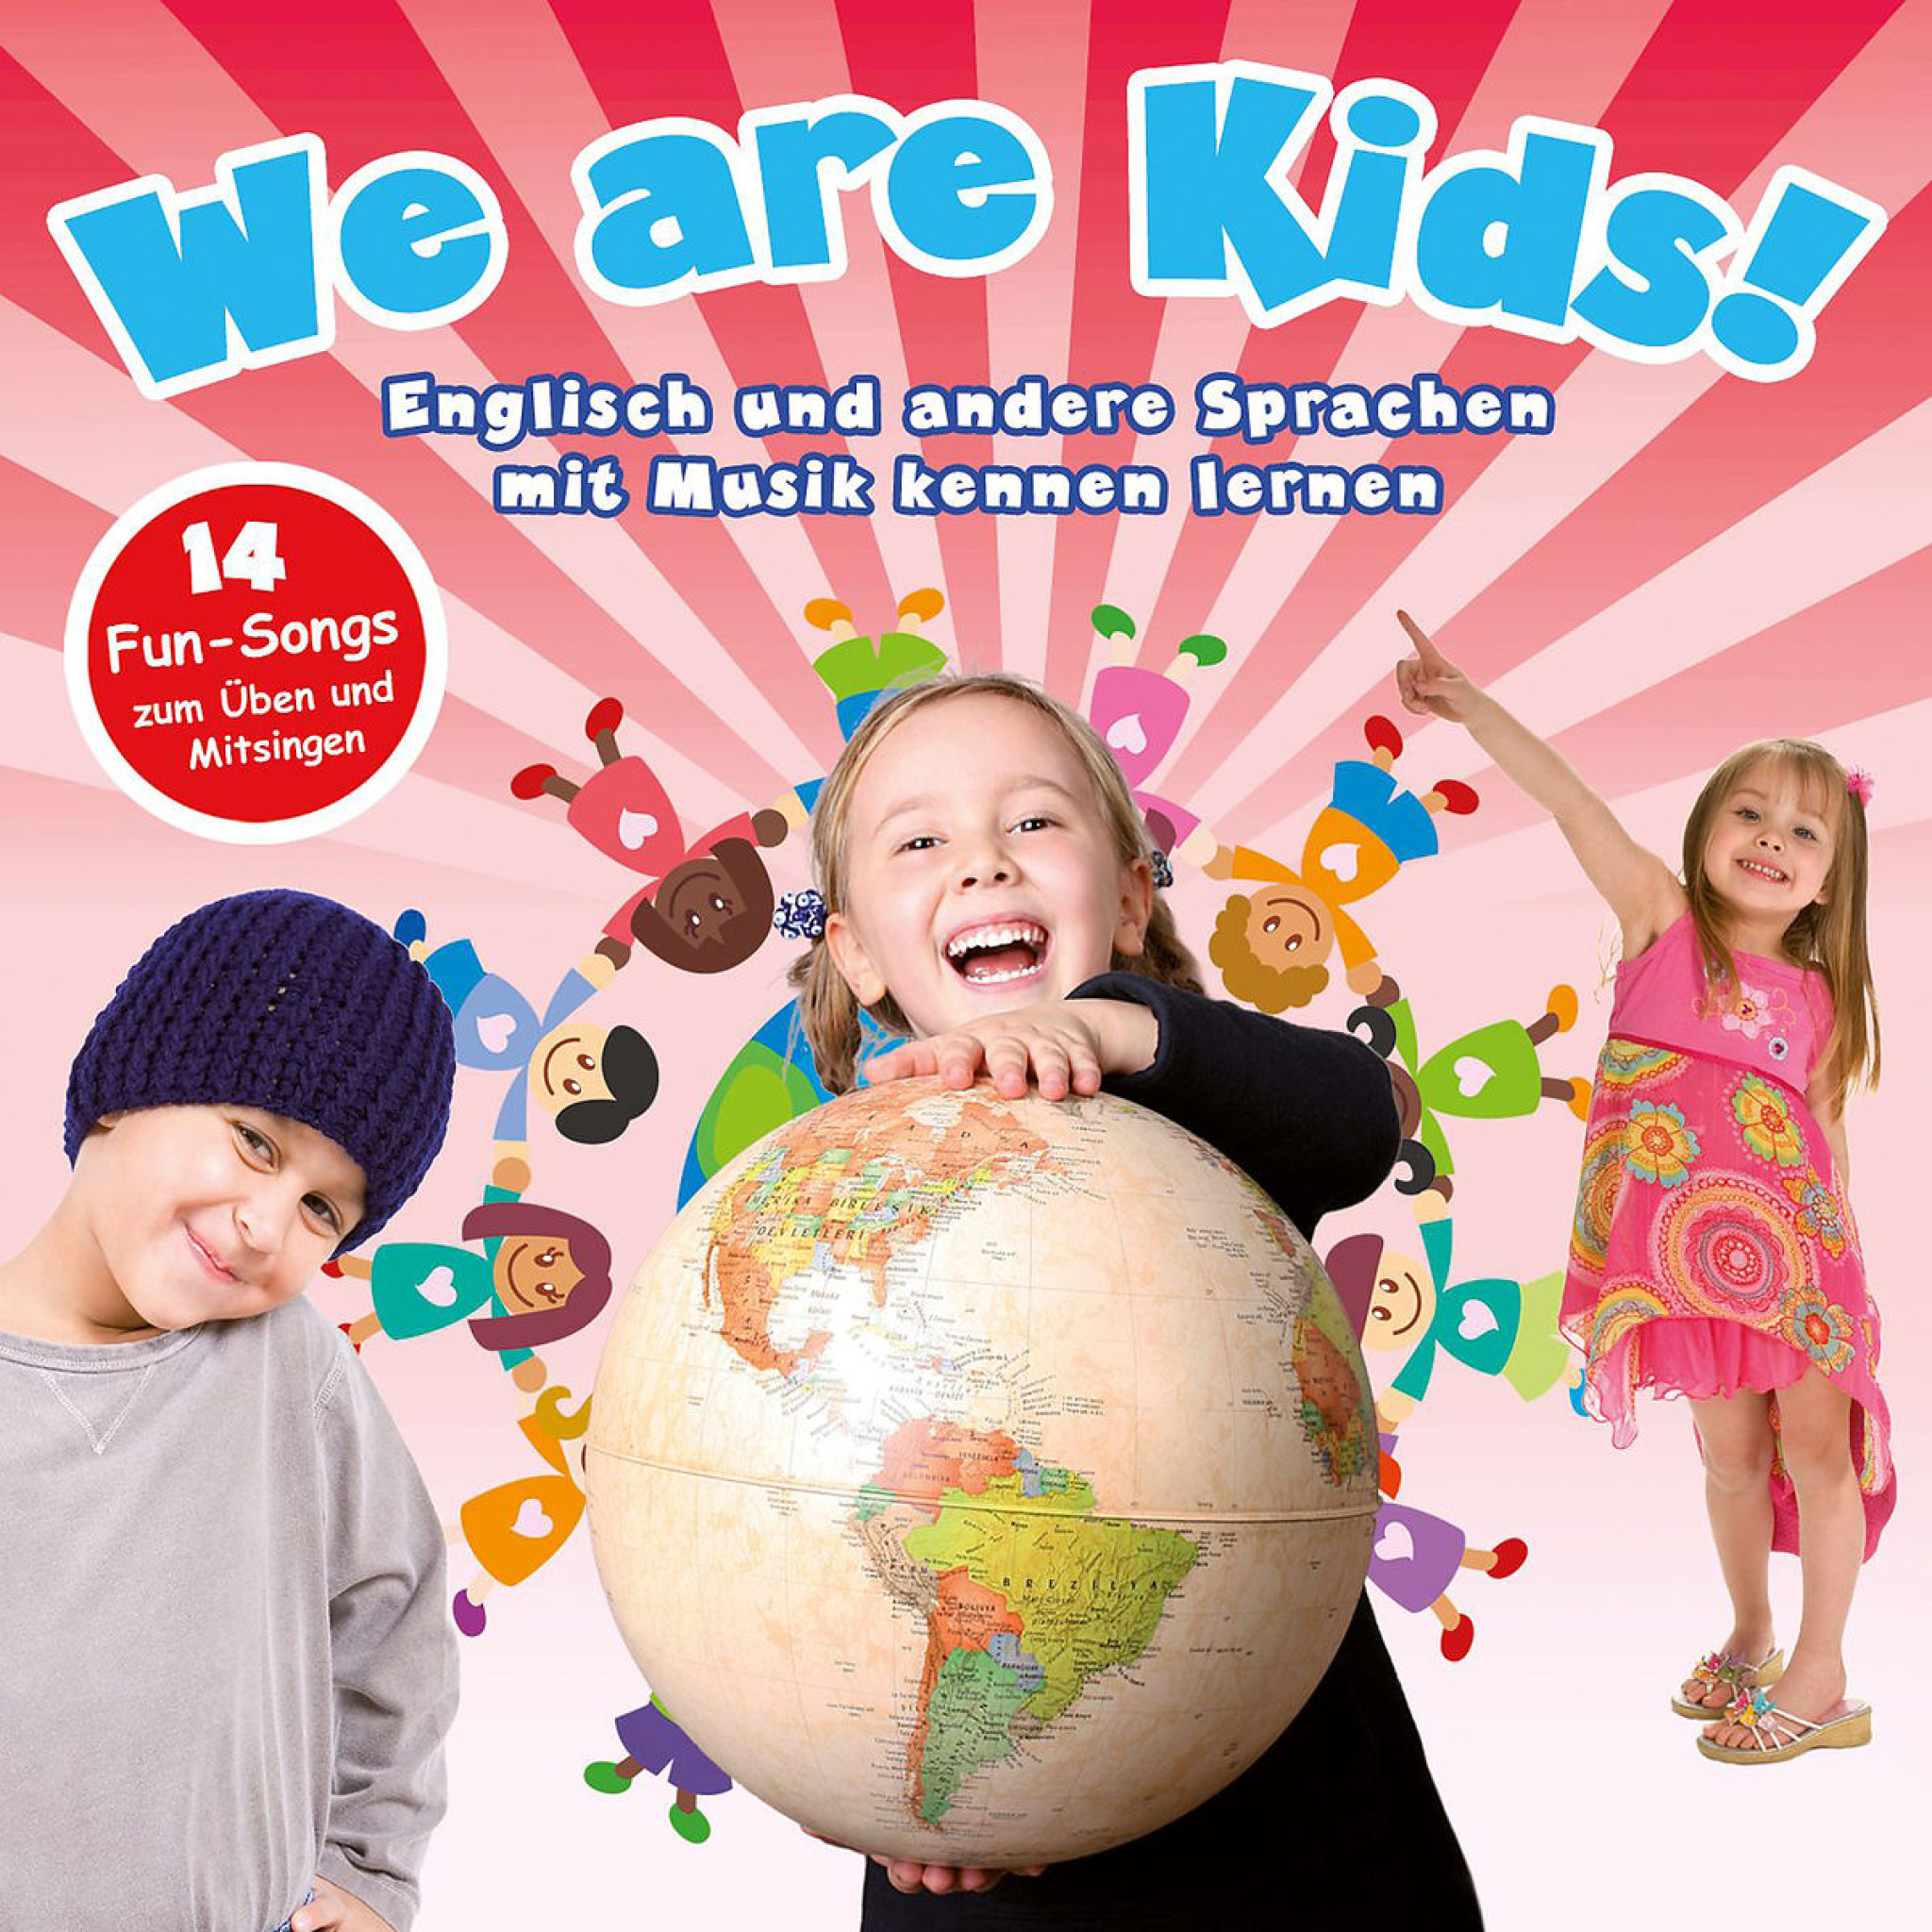 We Are Kids! - Englisch und andere Sprachen mit Musik kennen lernen 0602517801185